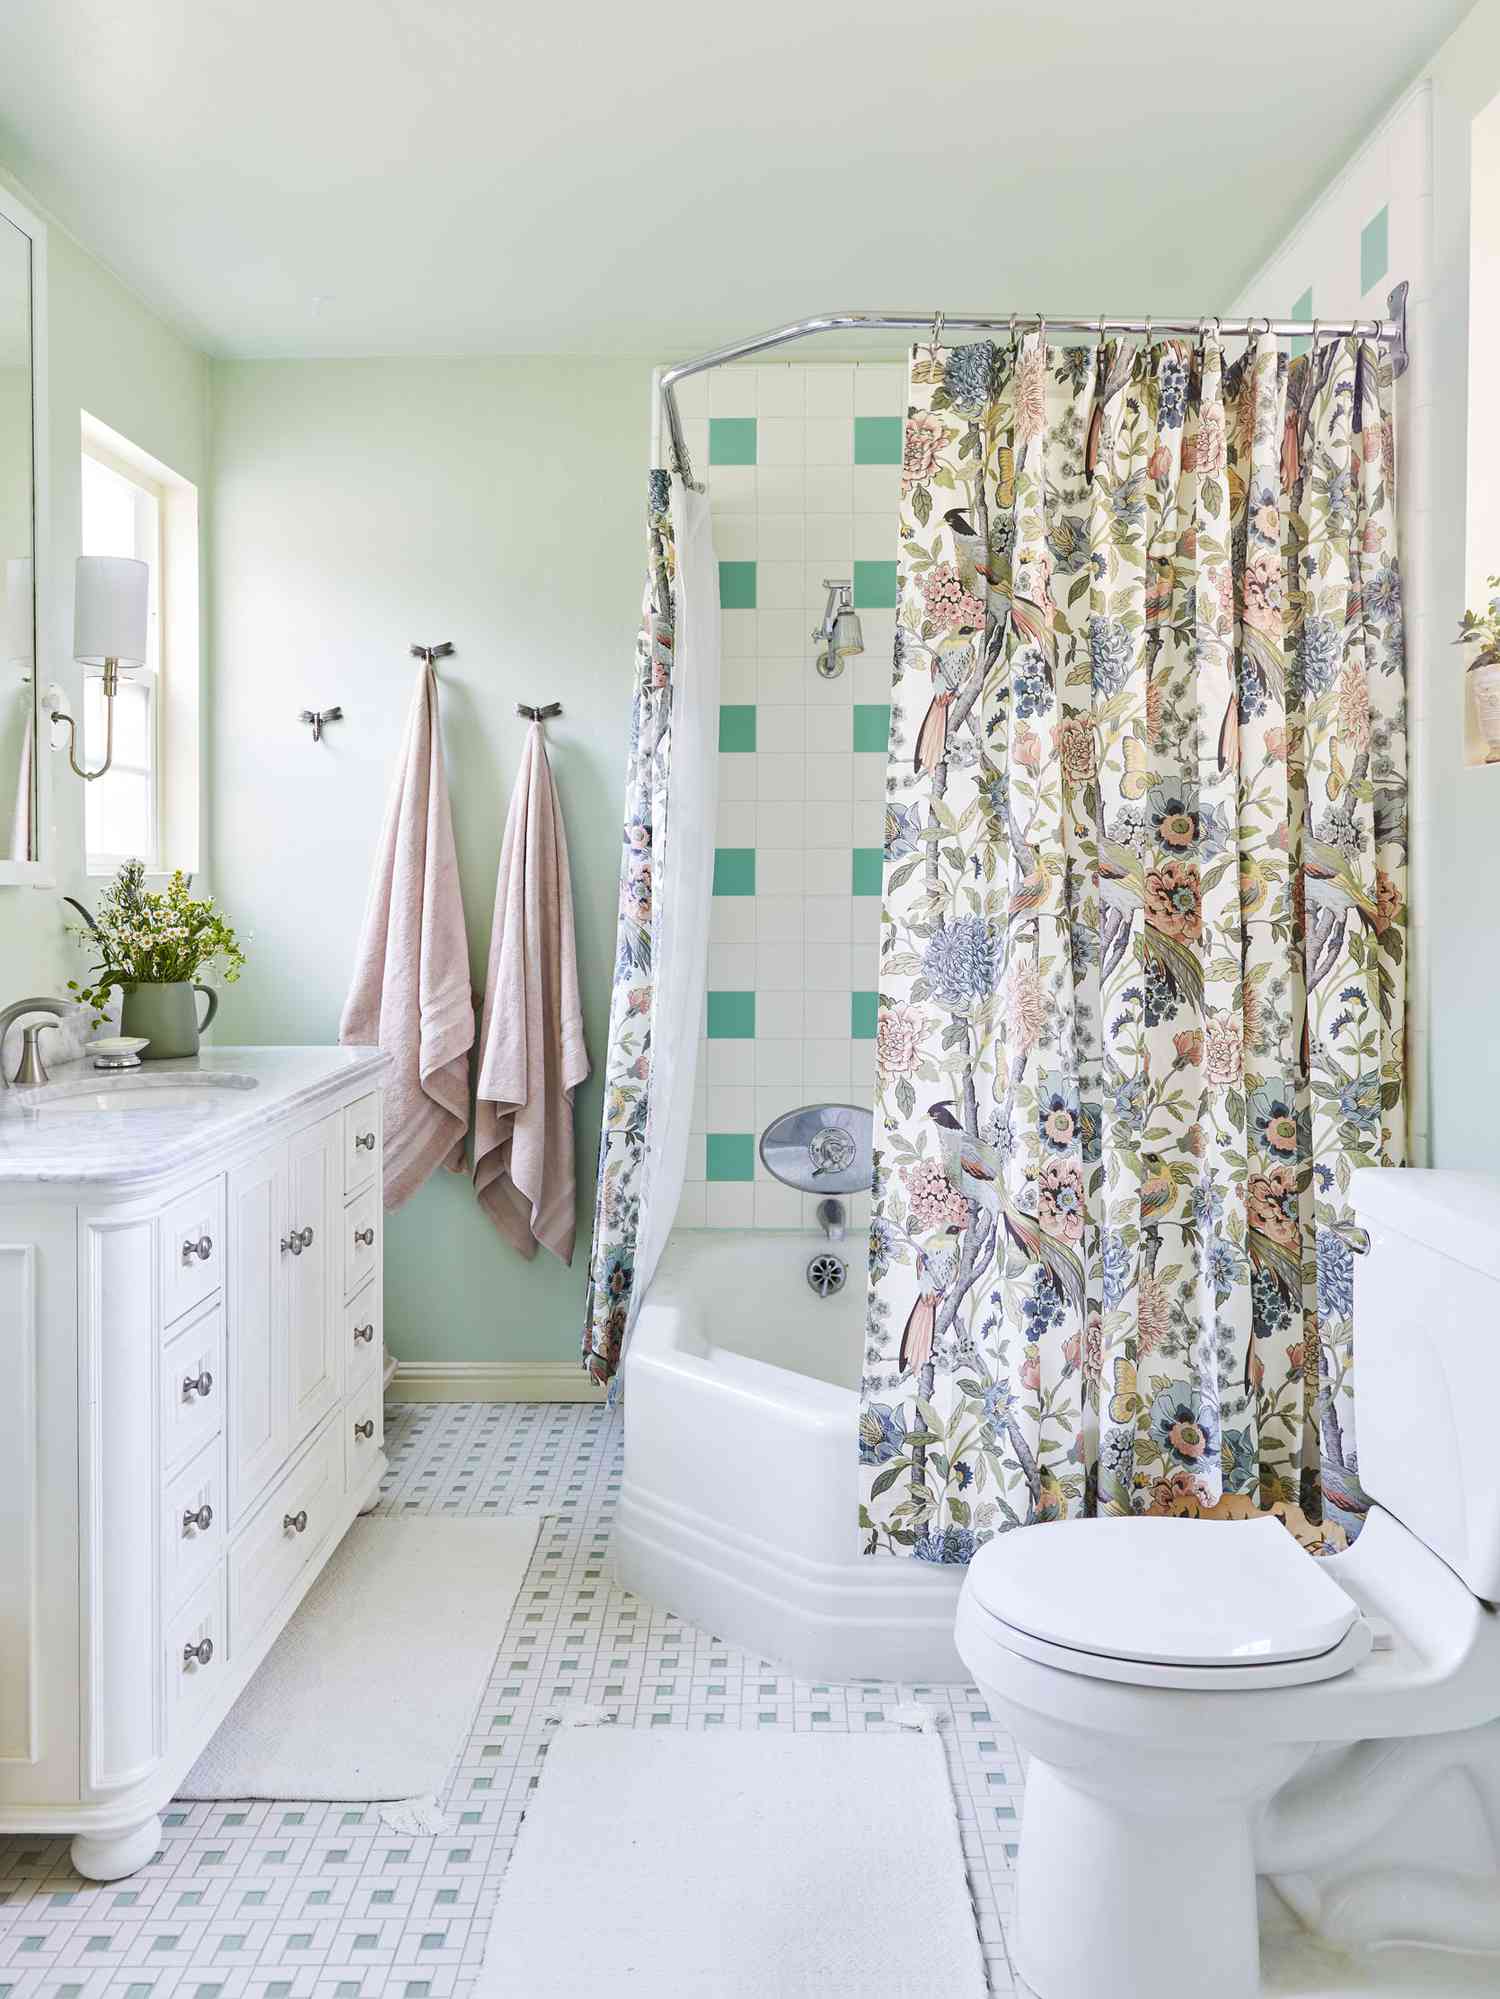 Una colorida cortina de ducha con motivos florales se combina con paredes pintadas en tonos verdes apagados